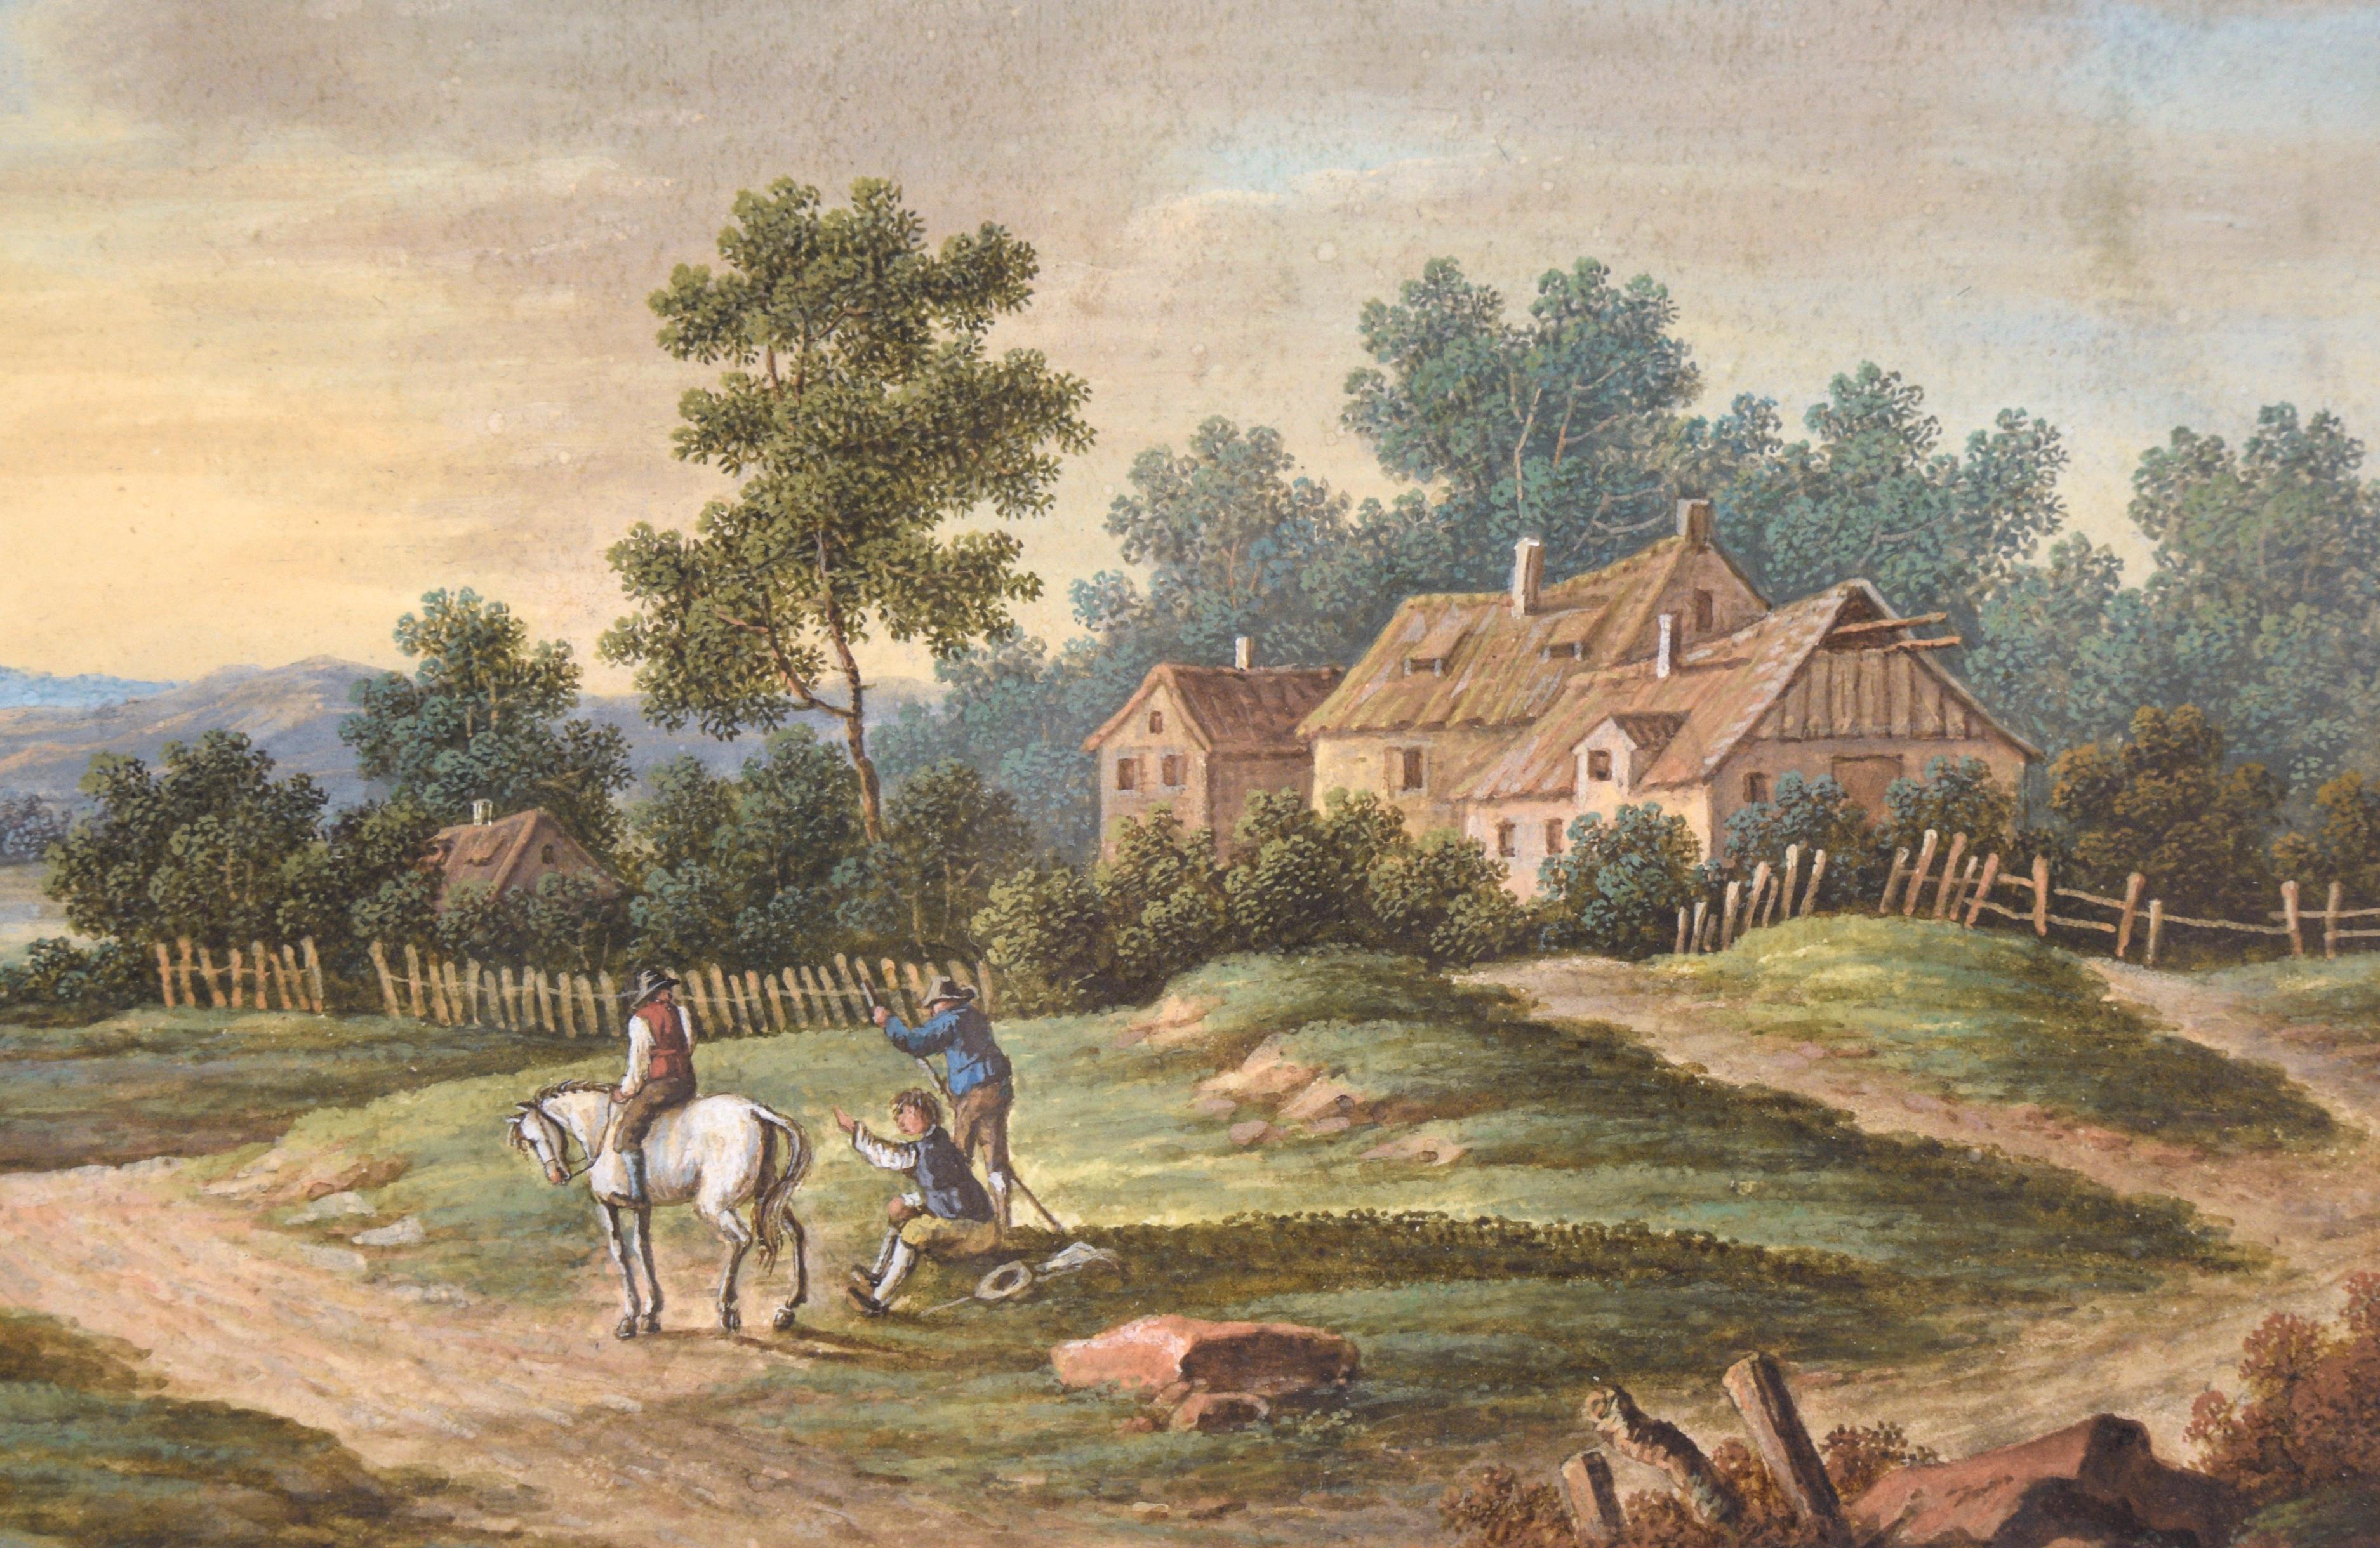 Das Landhaus - Bauernhof-Landschaft

Sehr detaillierte Szene mit einem Landhaus, Arbeitern und einem Hasen mit Reiter von einem unbekannten Künstler (19. Jahrhundert). Fünf Personen - eine davon auf einem Pferd - arbeiten in der Nähe von